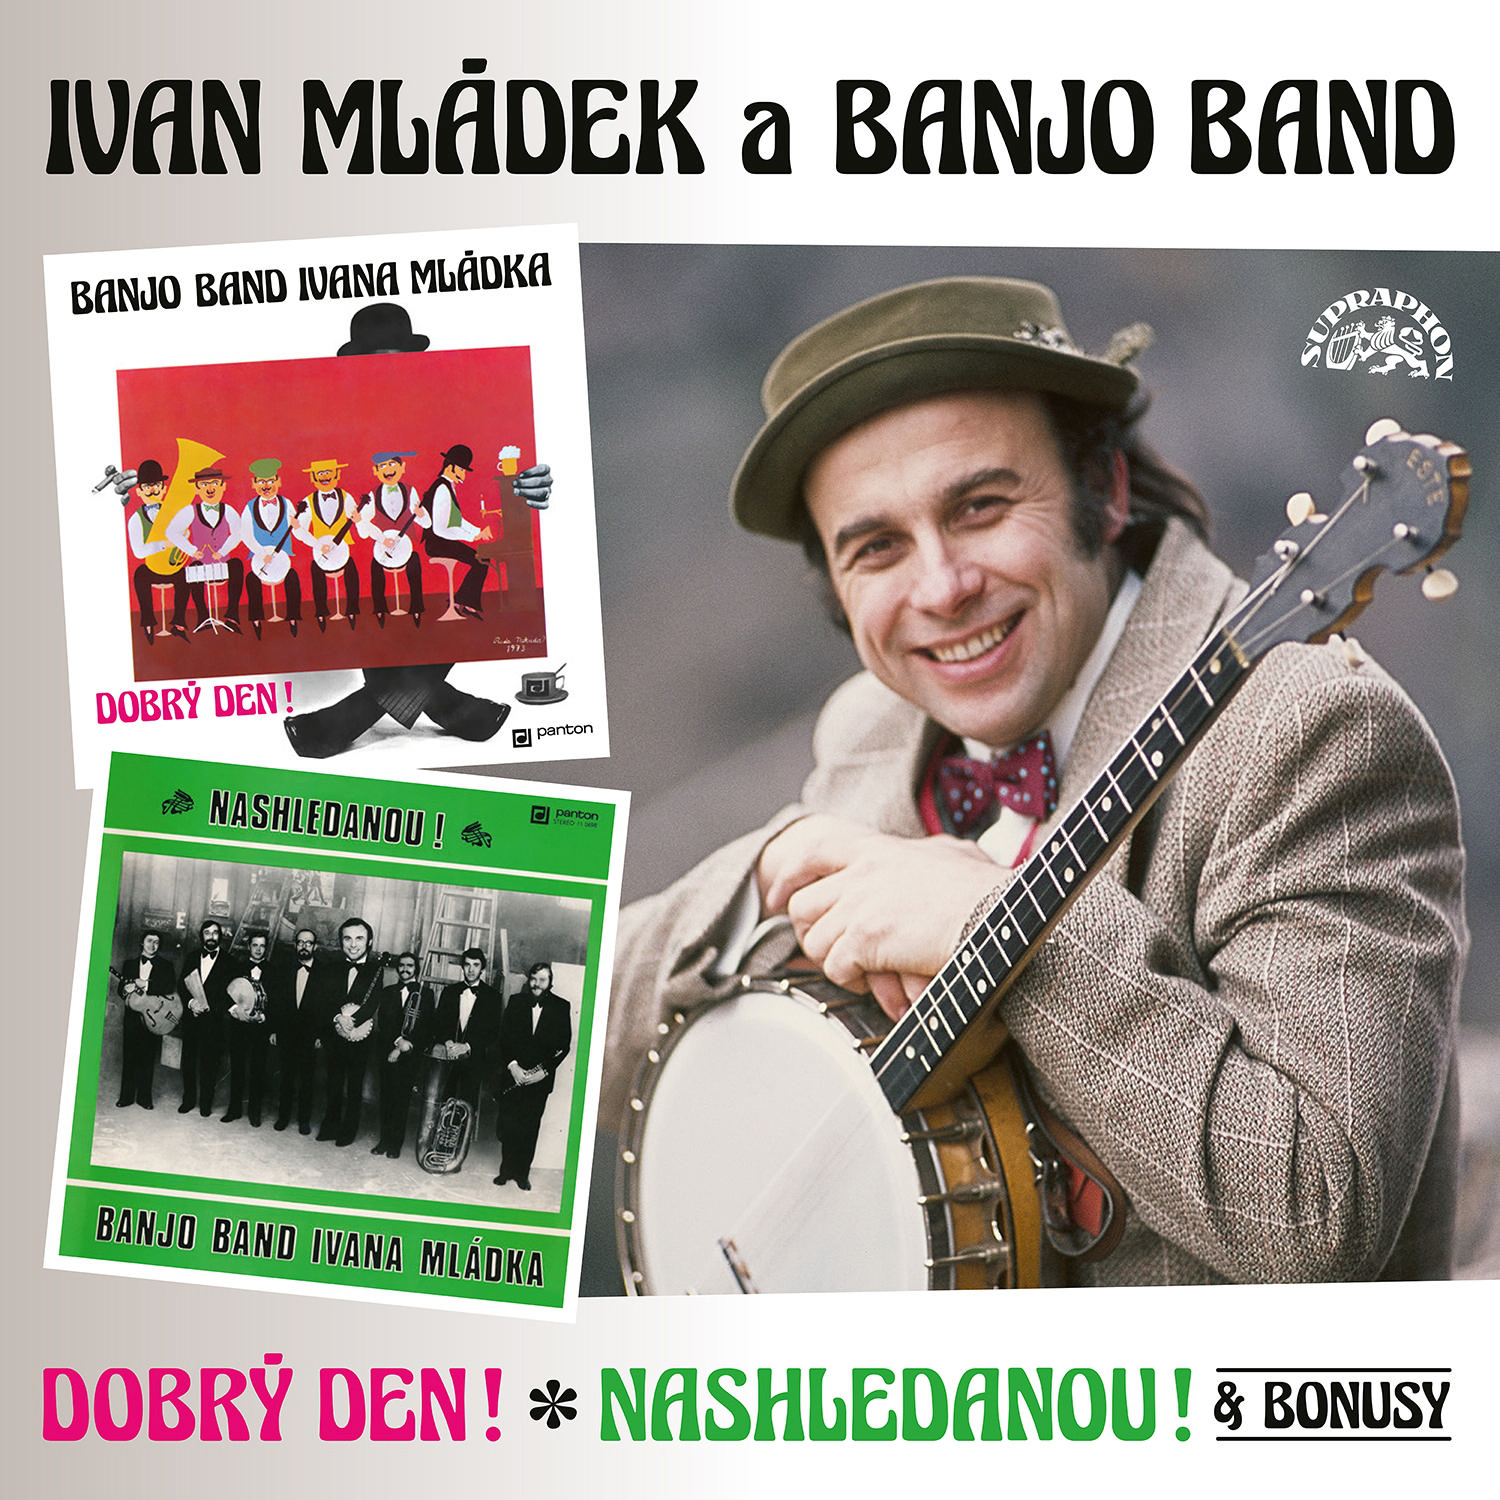 CD Shop - MLADEK IVAN DOBRY DEN! & NASHLEDANOU! (& BONUSY)